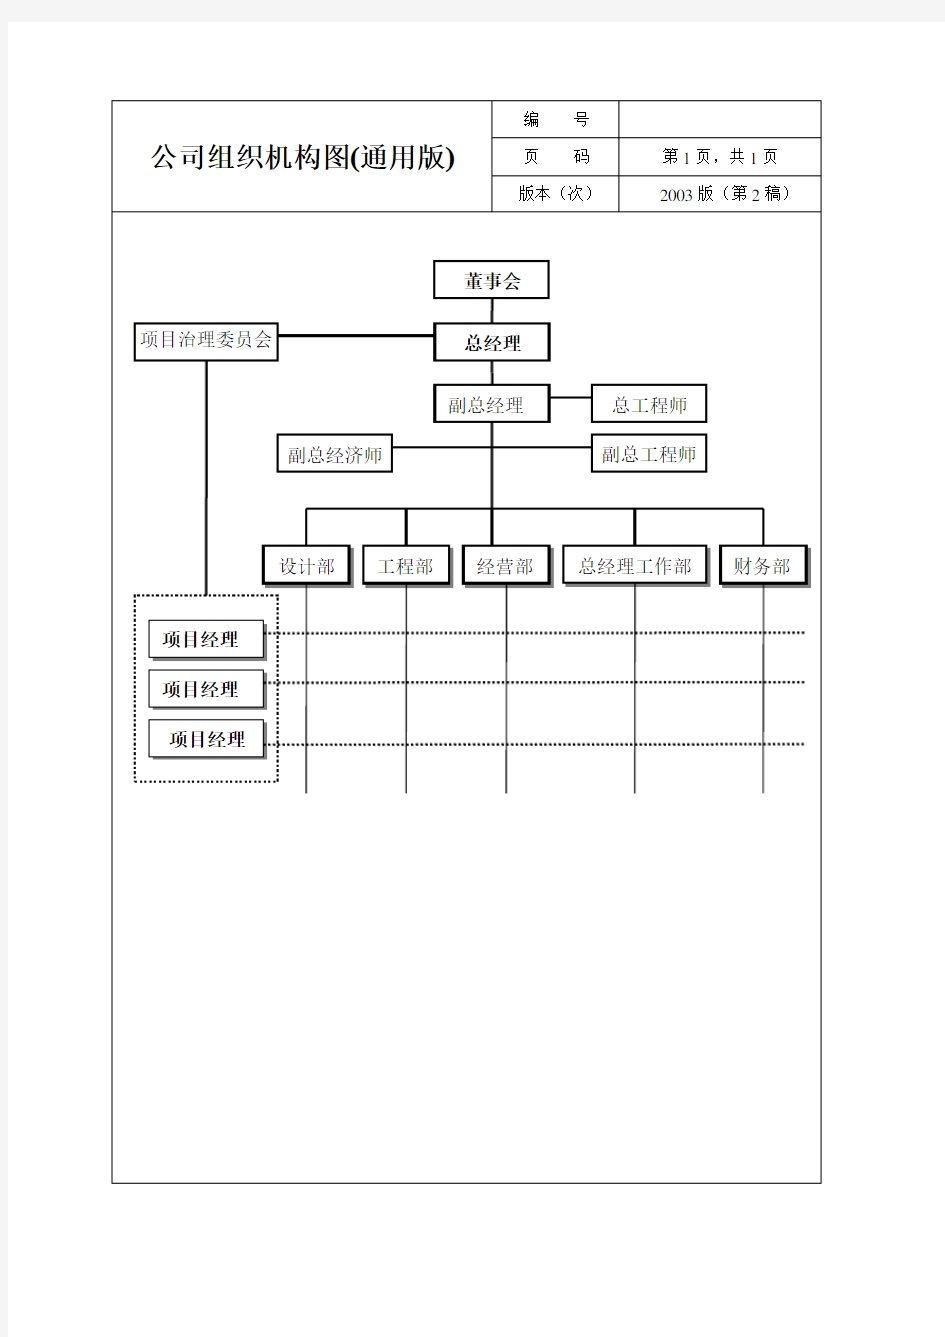 公司组织机构图(通用版)